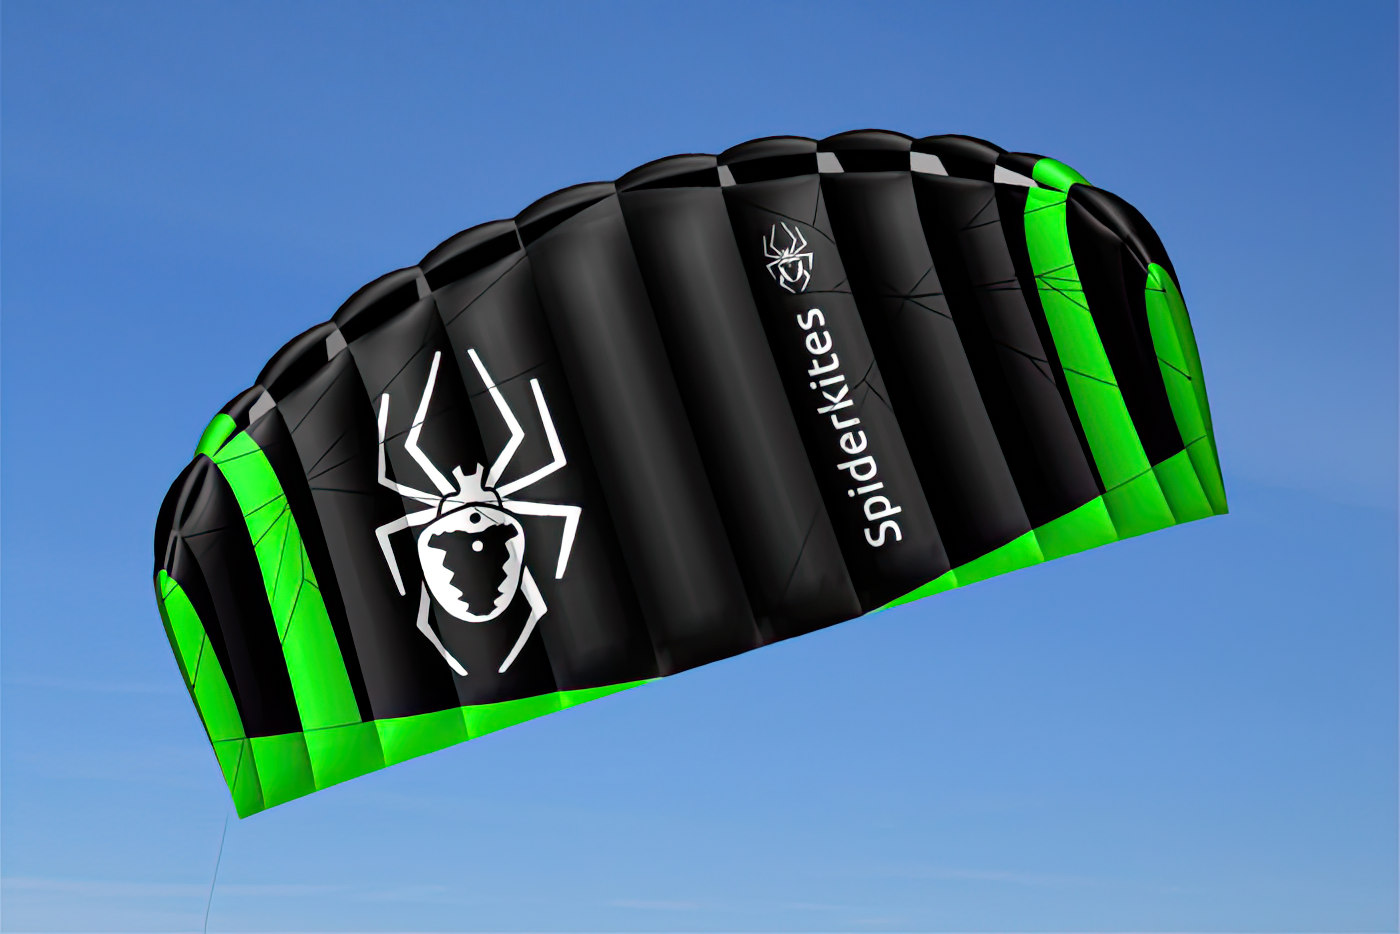 Spiderkites Amigo 2.50 DC Zweileiner-Lenkdrachen (Lenkmatte/Parafoil/Trainerkite/2-Leiner) rtf (flugfertig) 240 cm x 88 cm neongrün